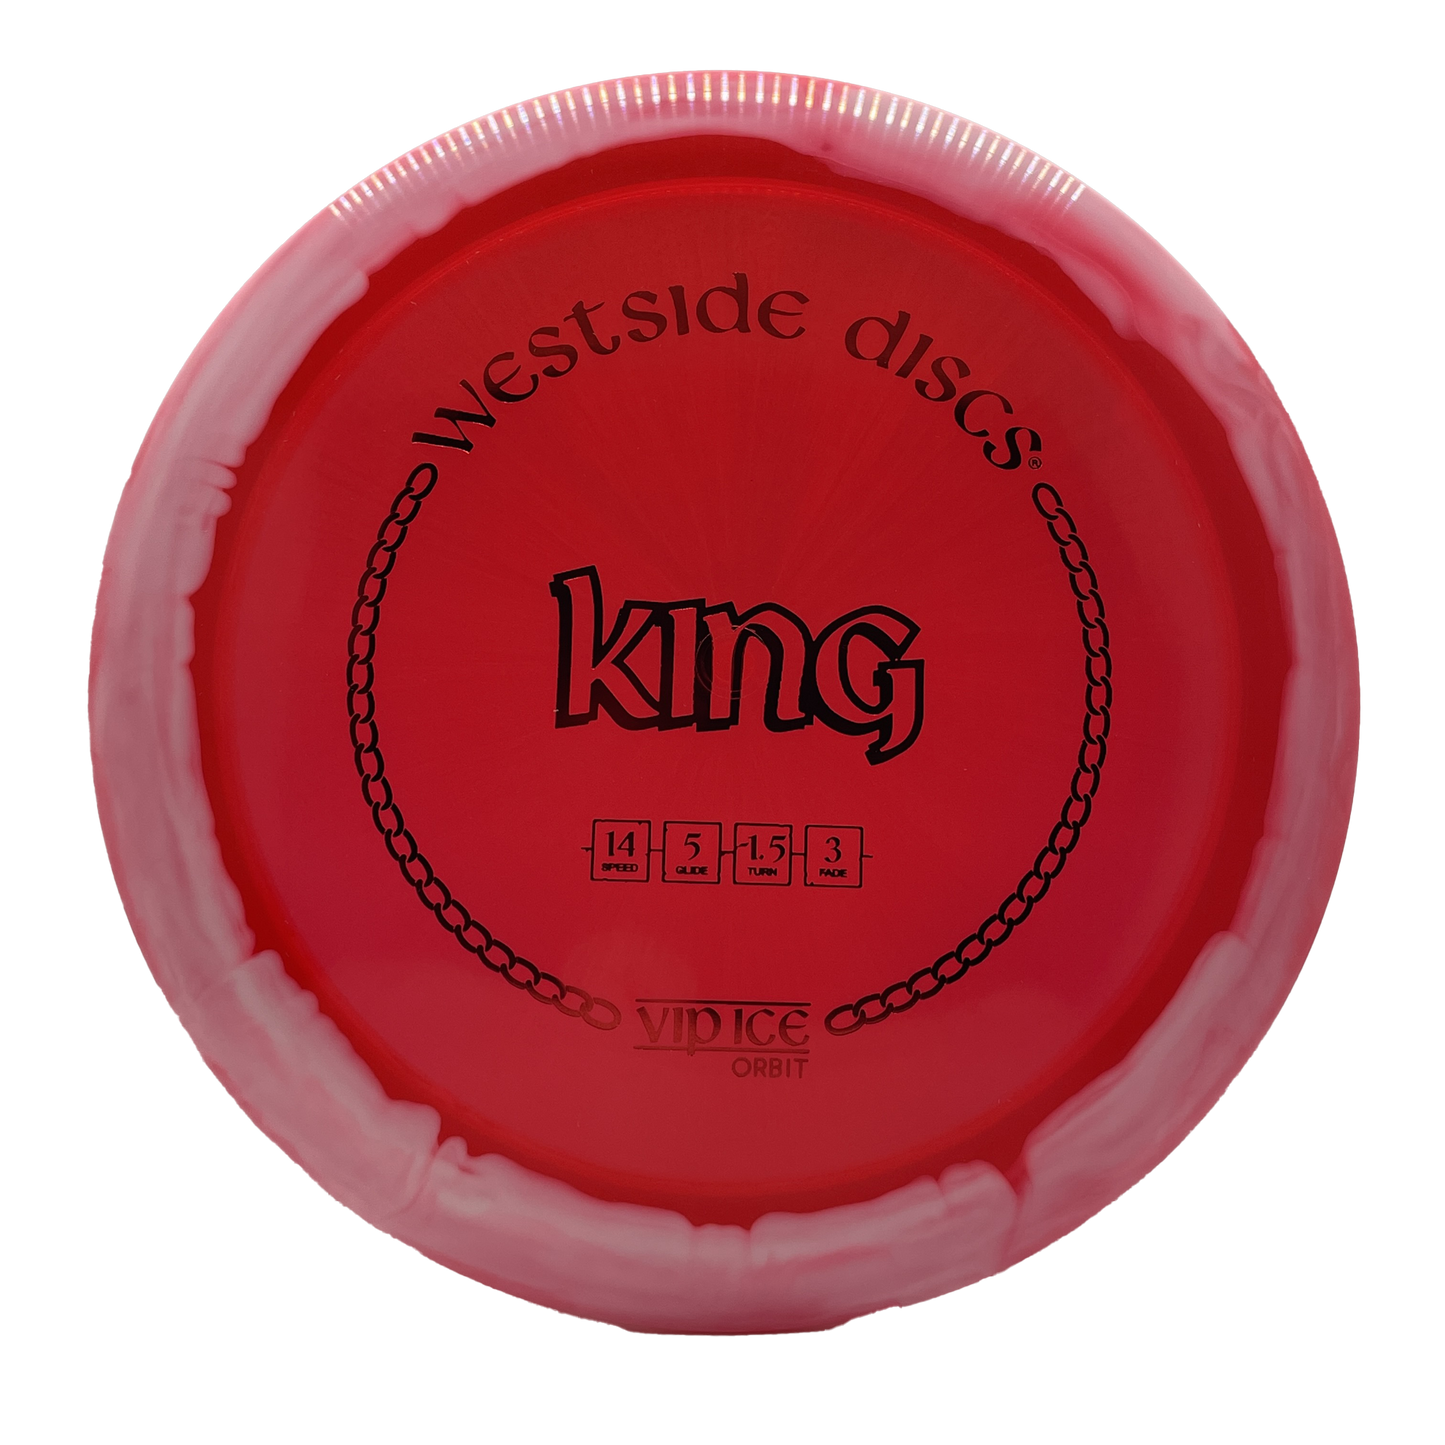 Westside Discs VIP Ice Orbit King - Distance Driver